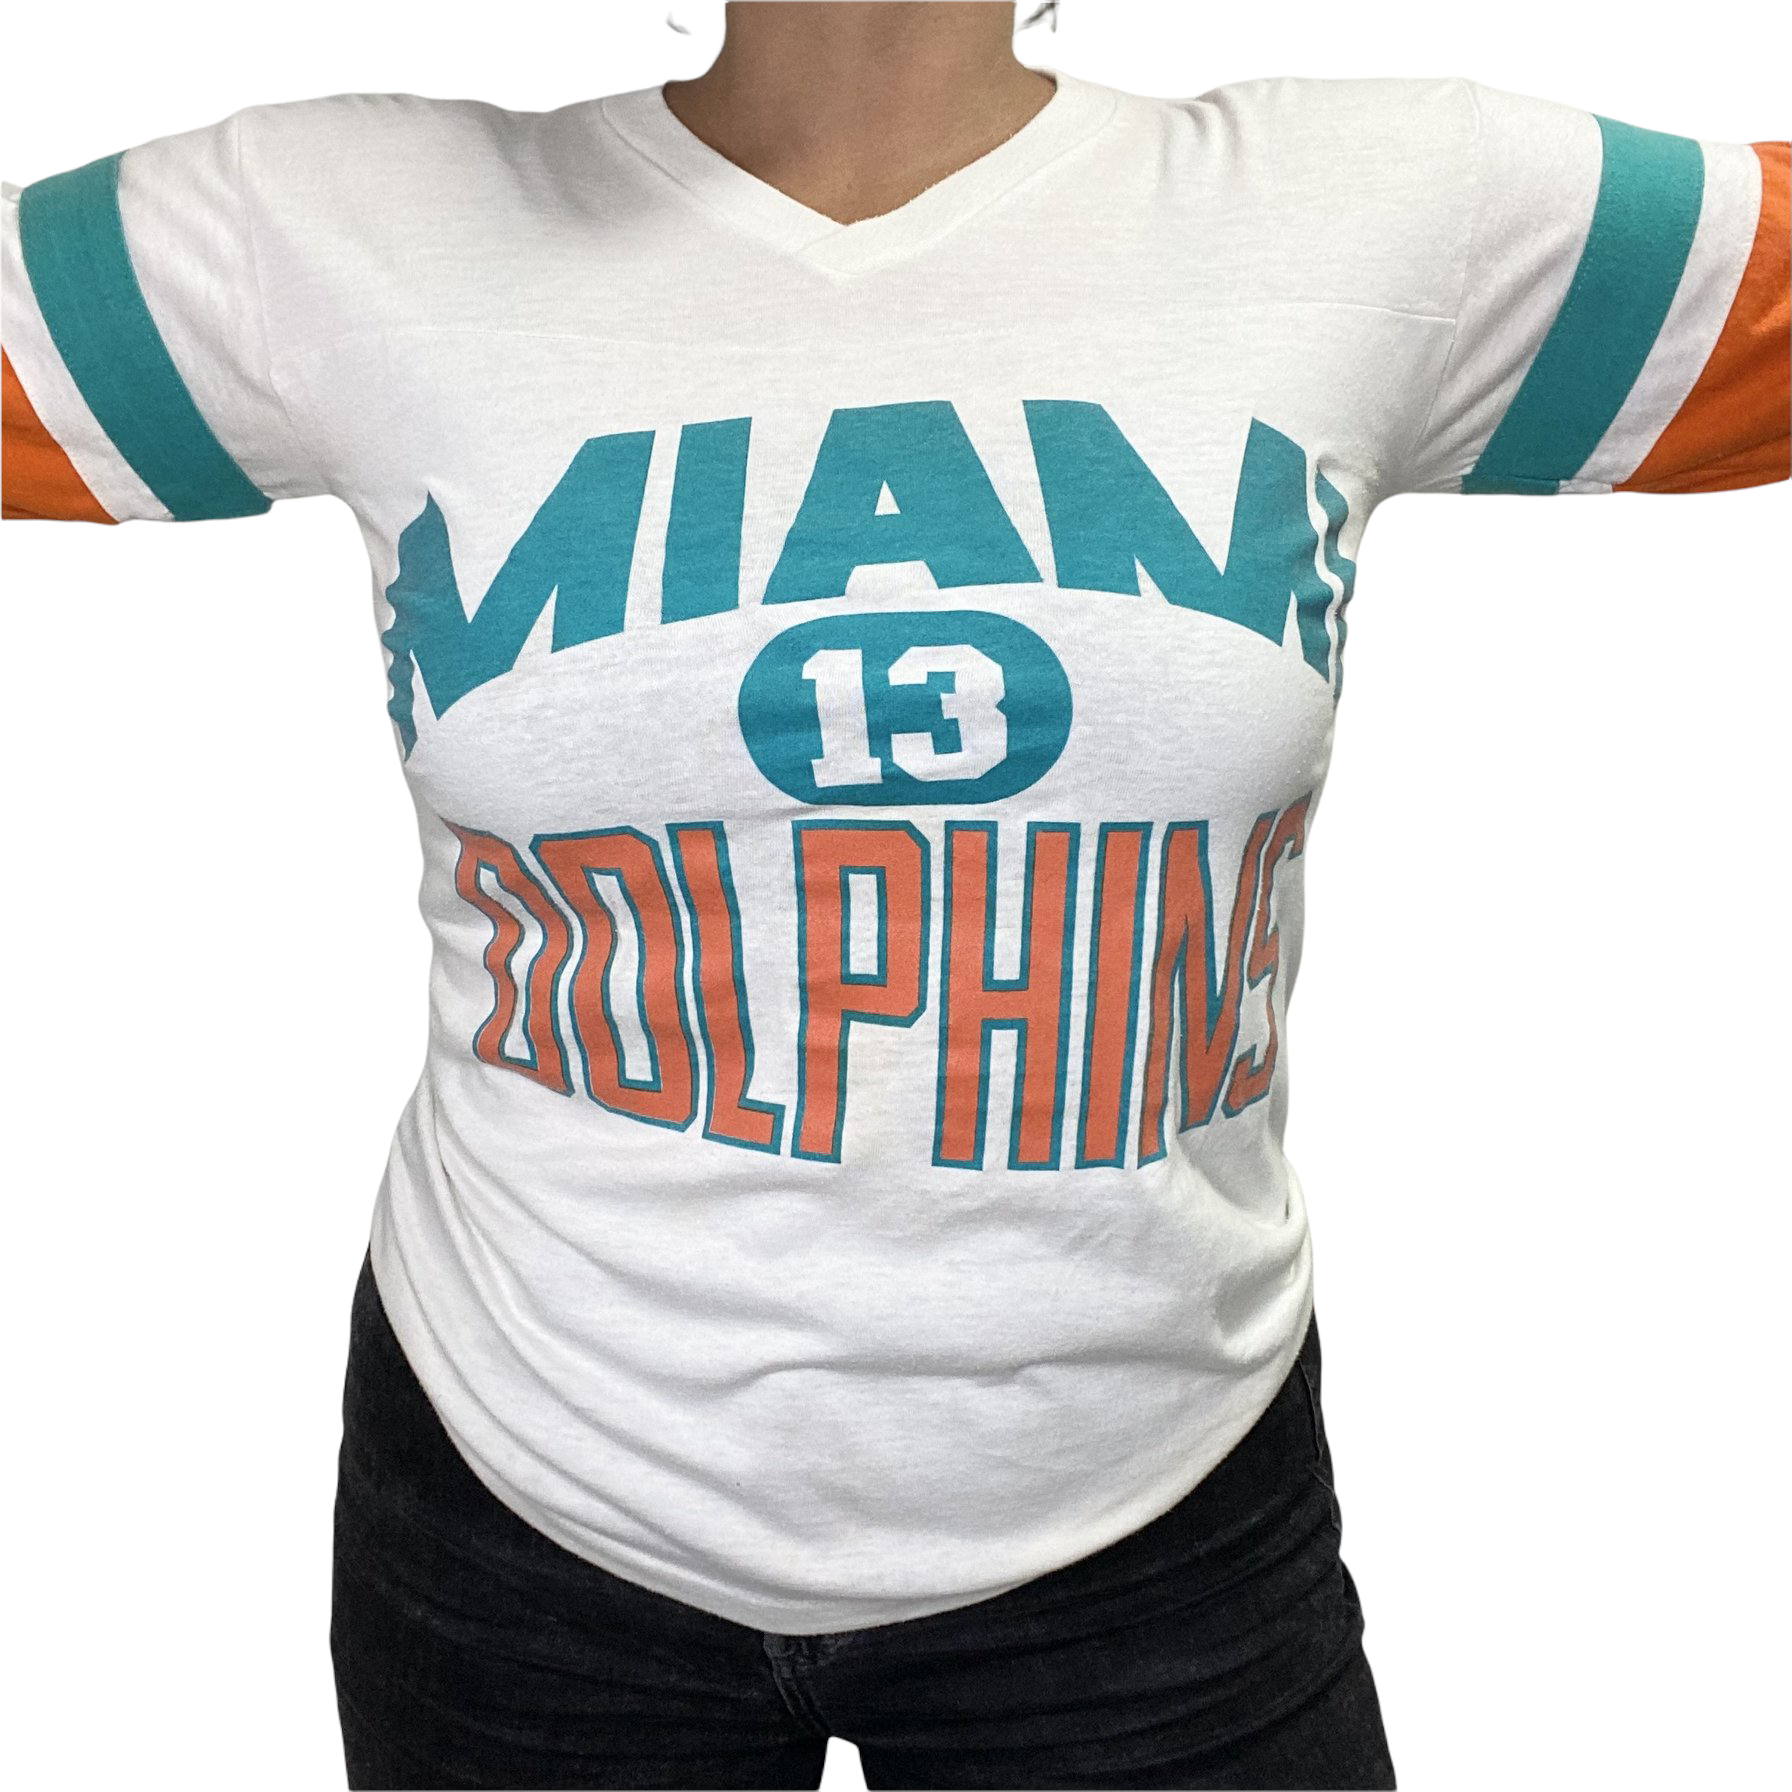 Vintage 1980s Miami Dolphins x Dan Marino Tshirt - S